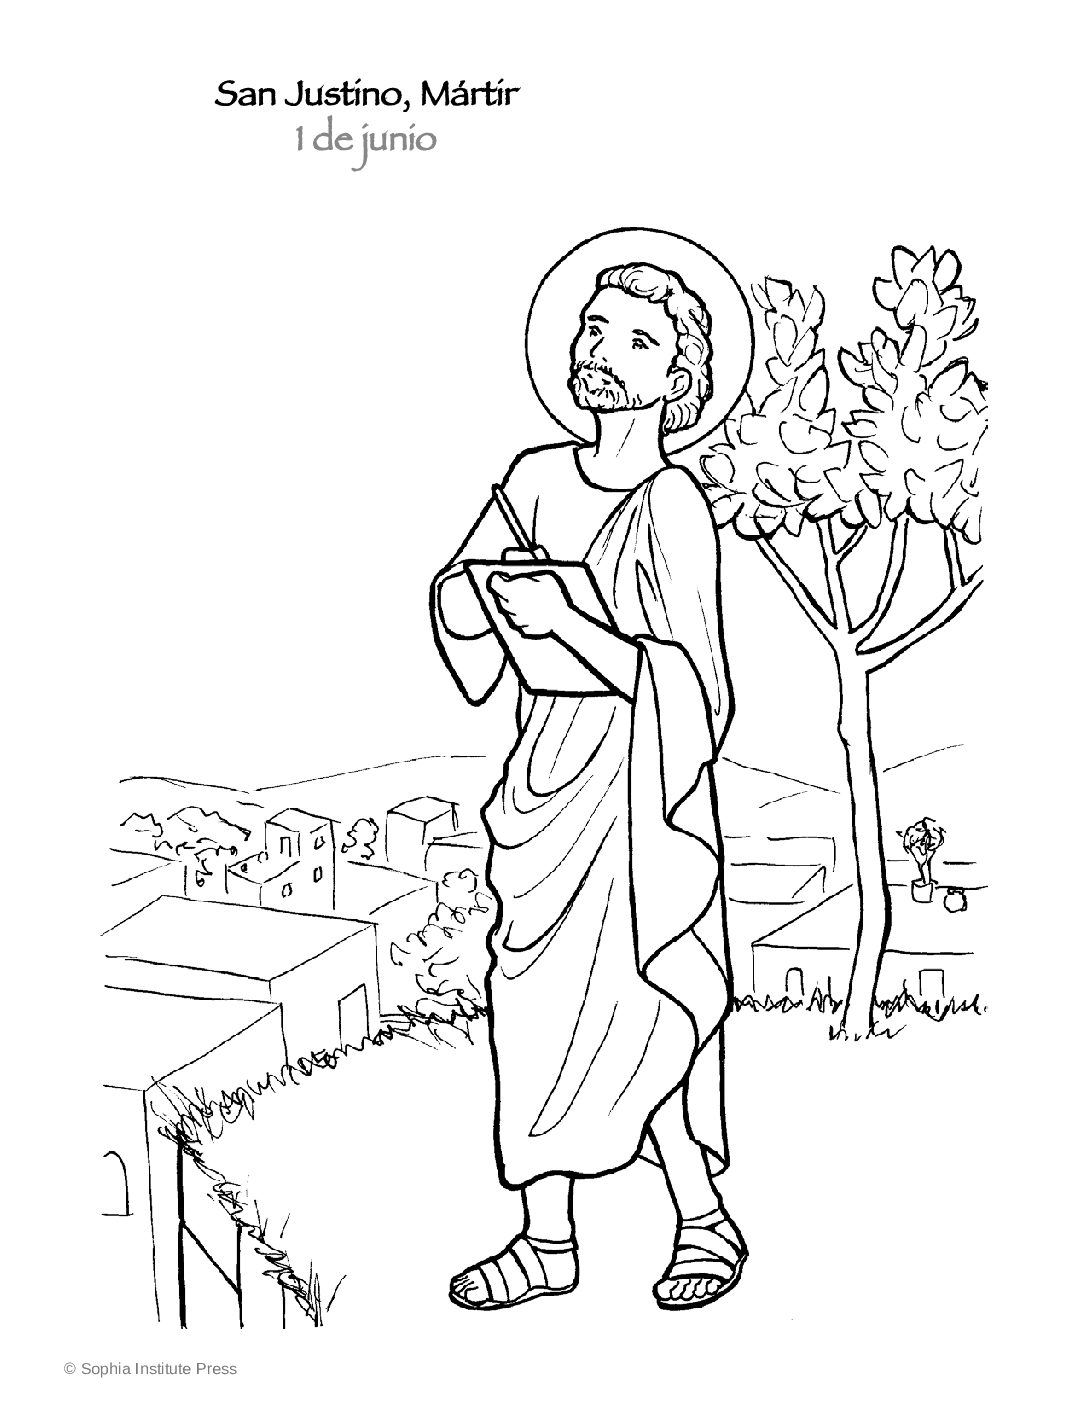 San Justino Mártir - historia y página para colorear - Sophia Teachers